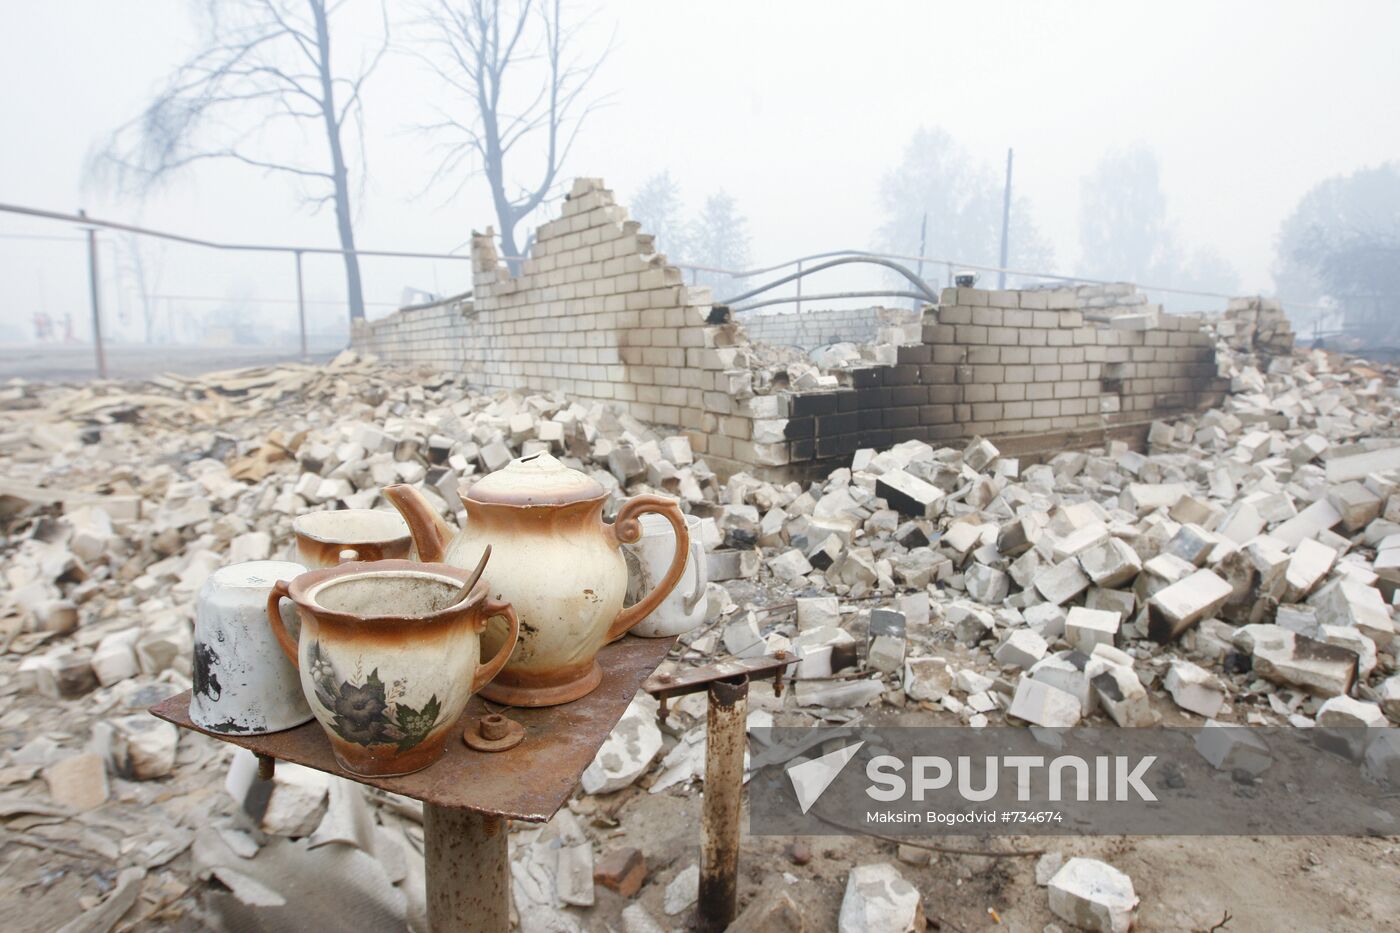 Burned house in village of Borkovka, Nizhny Novgorod Region